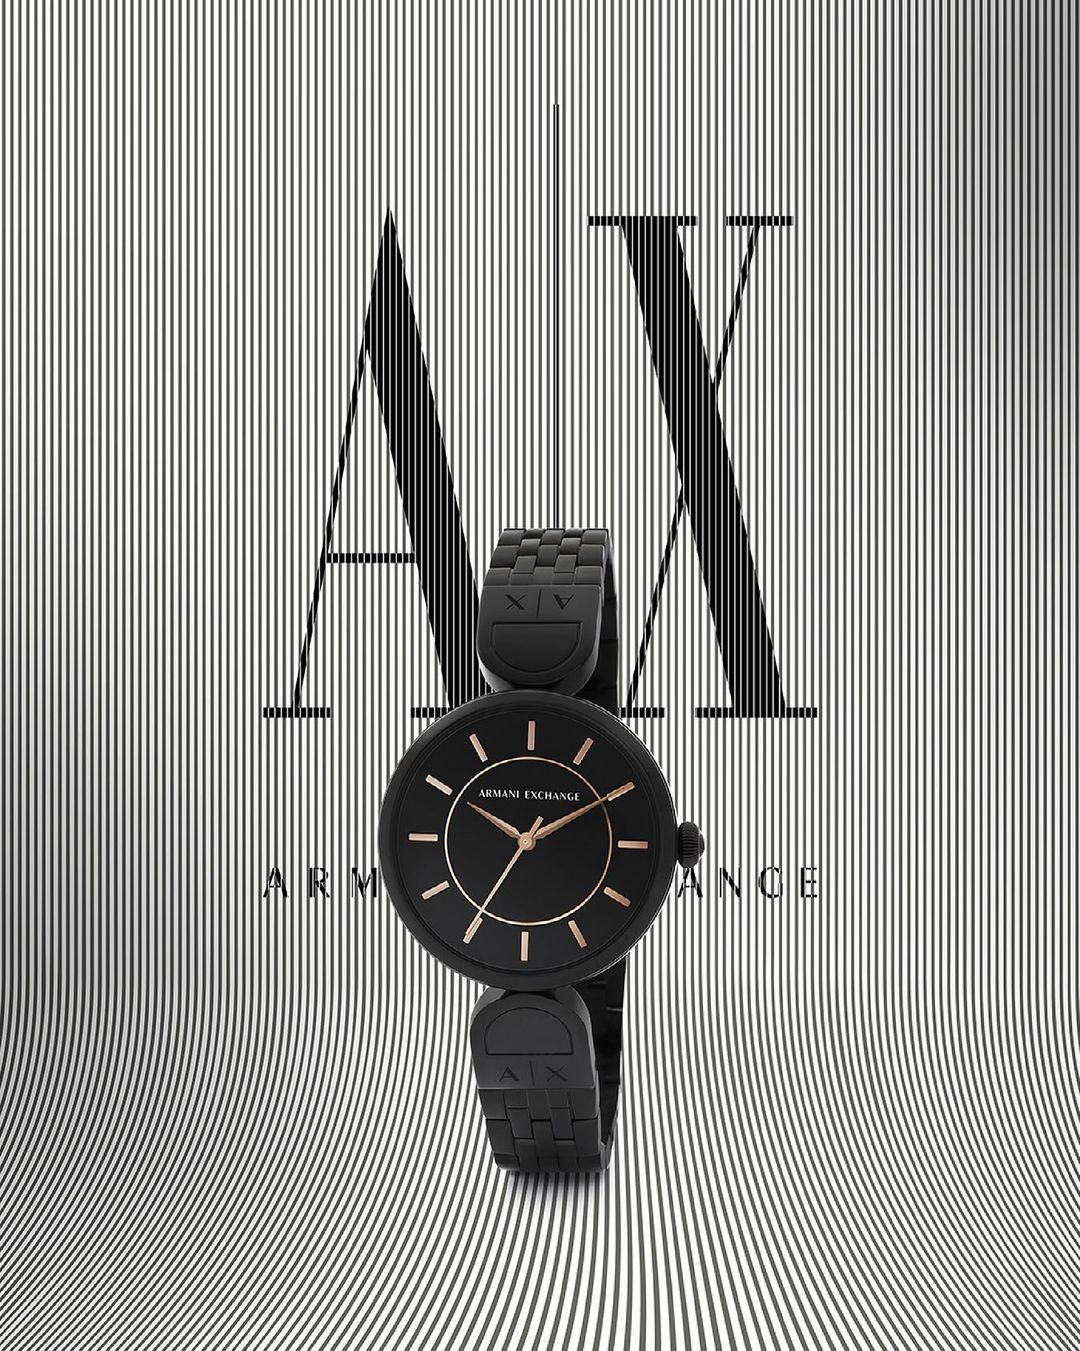 La relojería como accesorio básico de temporada gracias a Armani Exchange